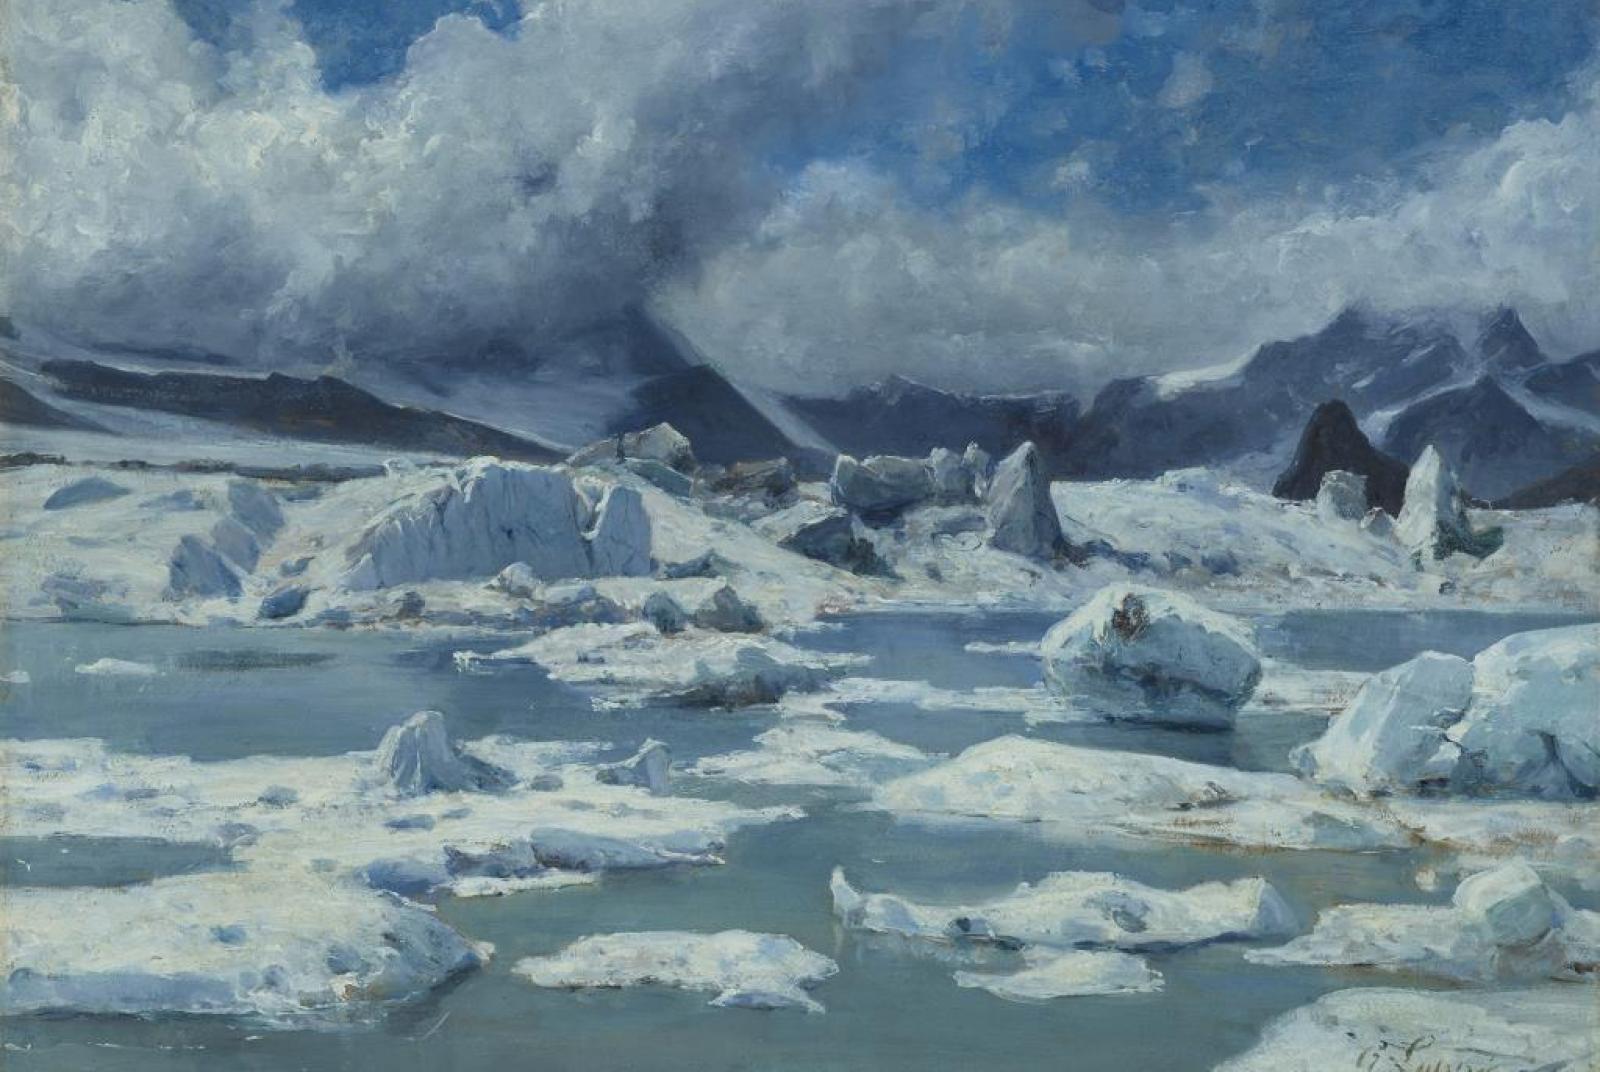 Conférence: Que sont devenus les glaciers de Gabriel Loppé?